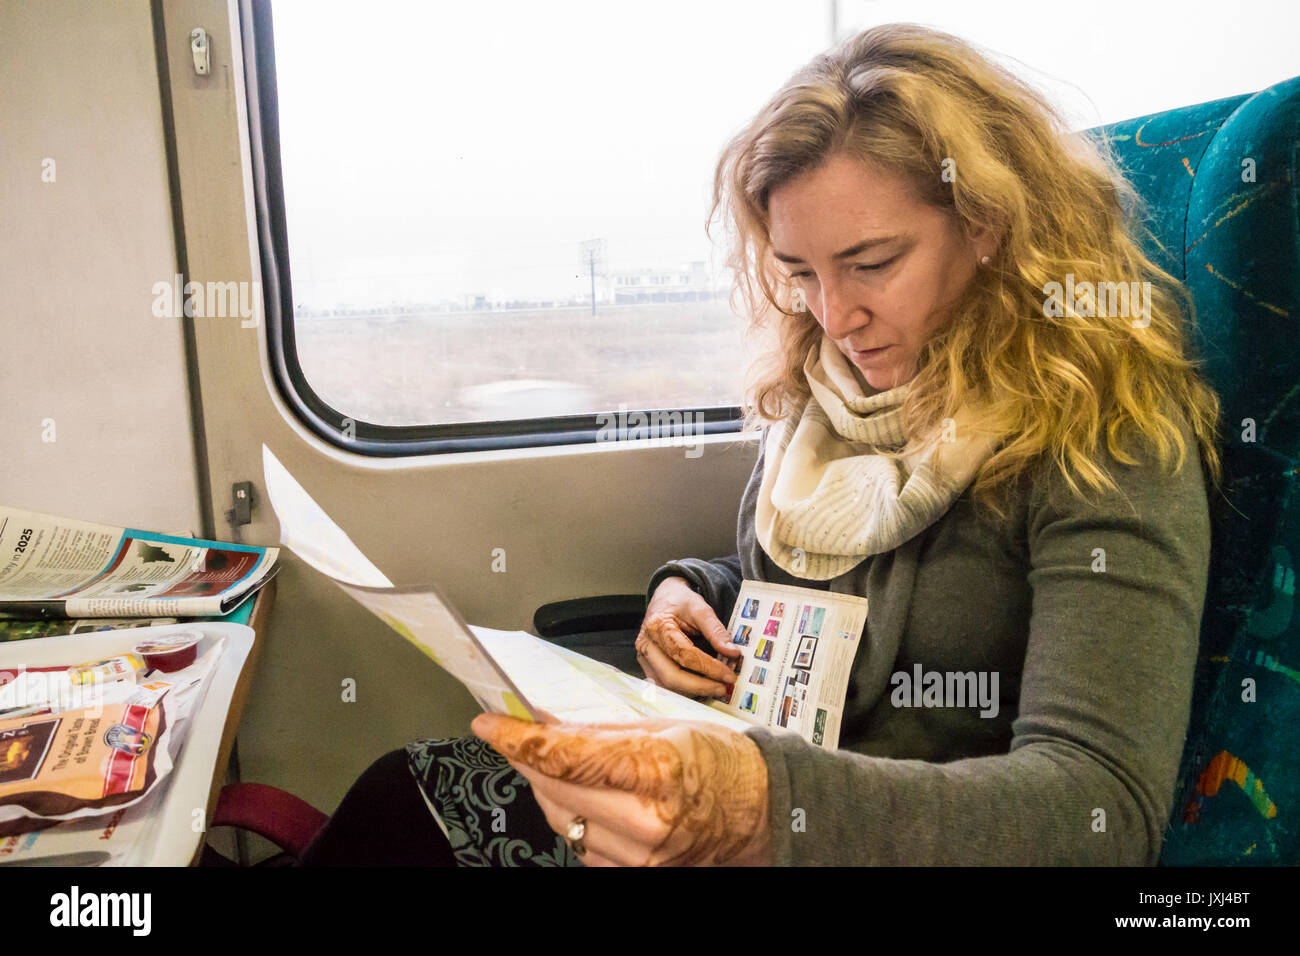 Une femme dans un train entre Delhi et Agra Inde étudier l'information de voyage et les cartes. Banque D'Images